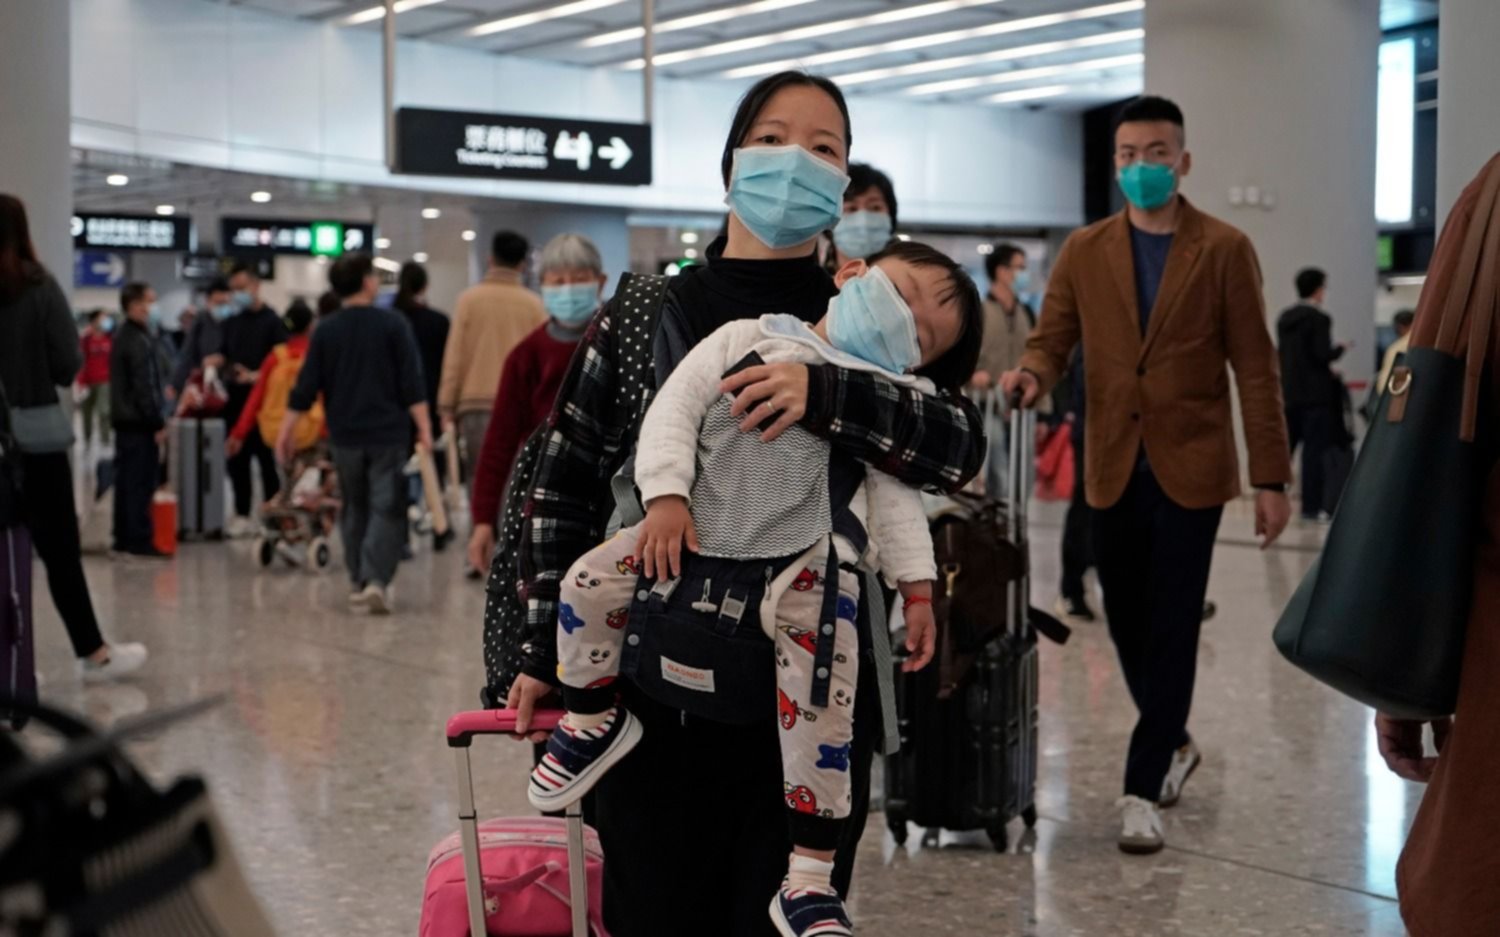 Virus chino mortal: Wuhan ya está "blindada" y cierran otras dos ciudades por temor a epidemia